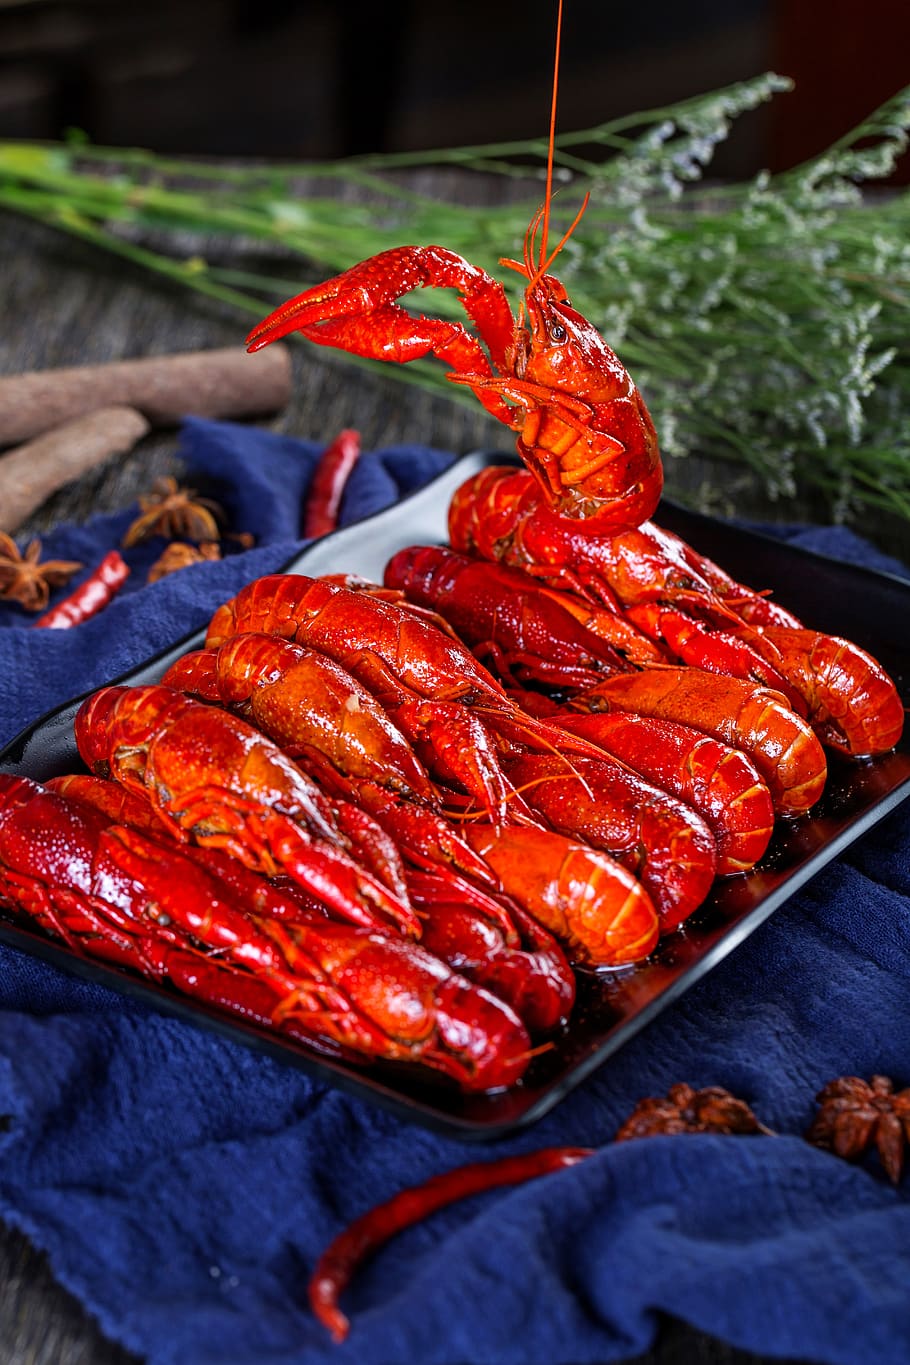 lagosta, gadget inspetor de camarão, comida e bebida, comida, vermelho, frescura, crustáceo, close-up, frutos do mar, ninguém